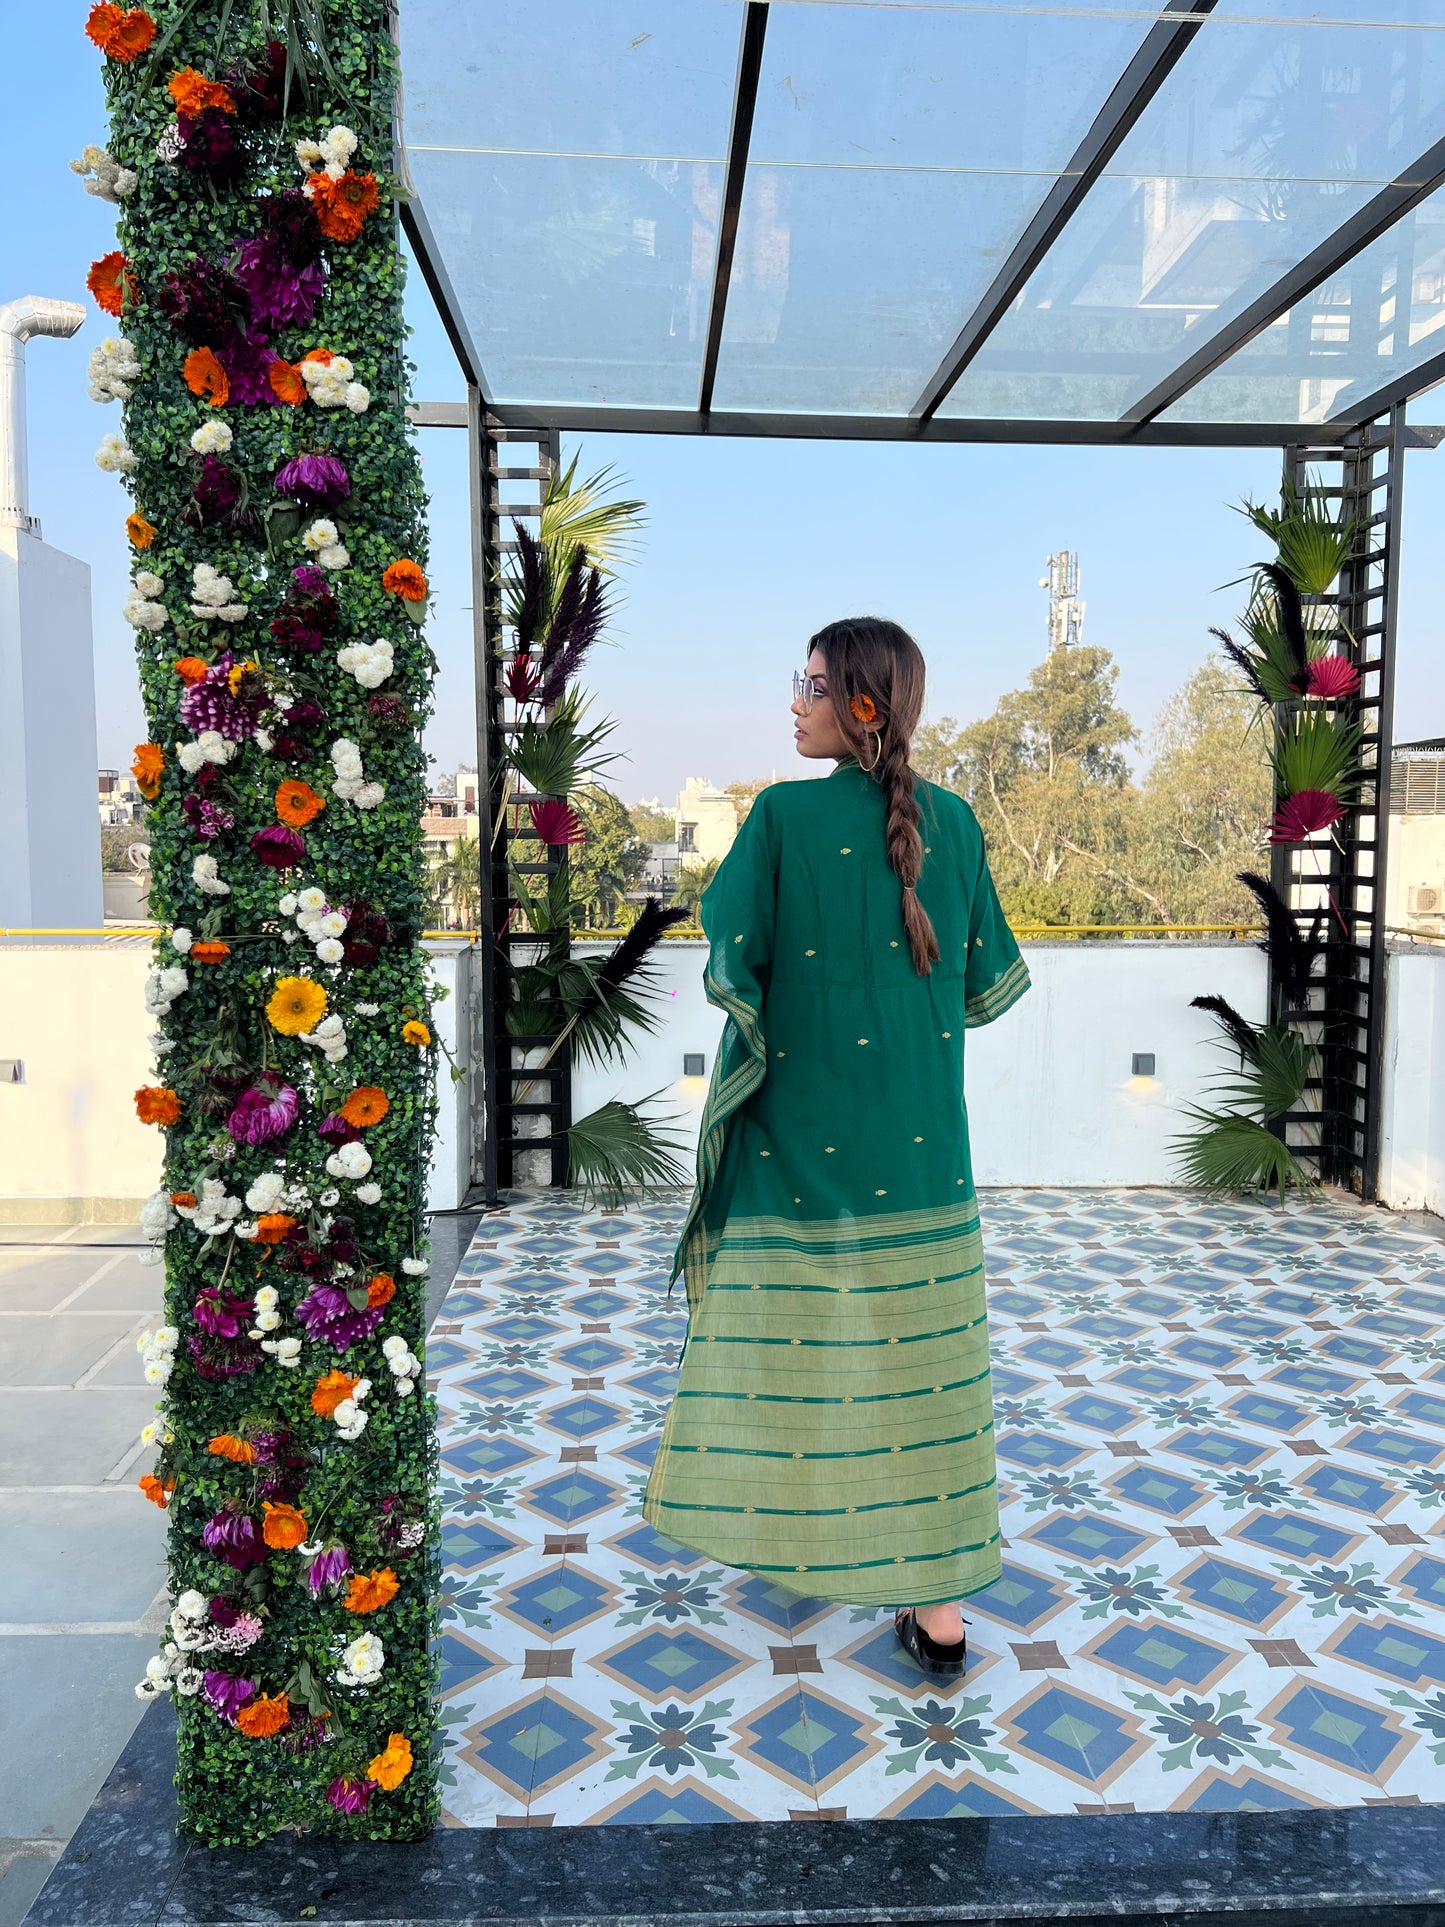 South Indian Cotton Saree Kaftan Dress - Gilded Jade